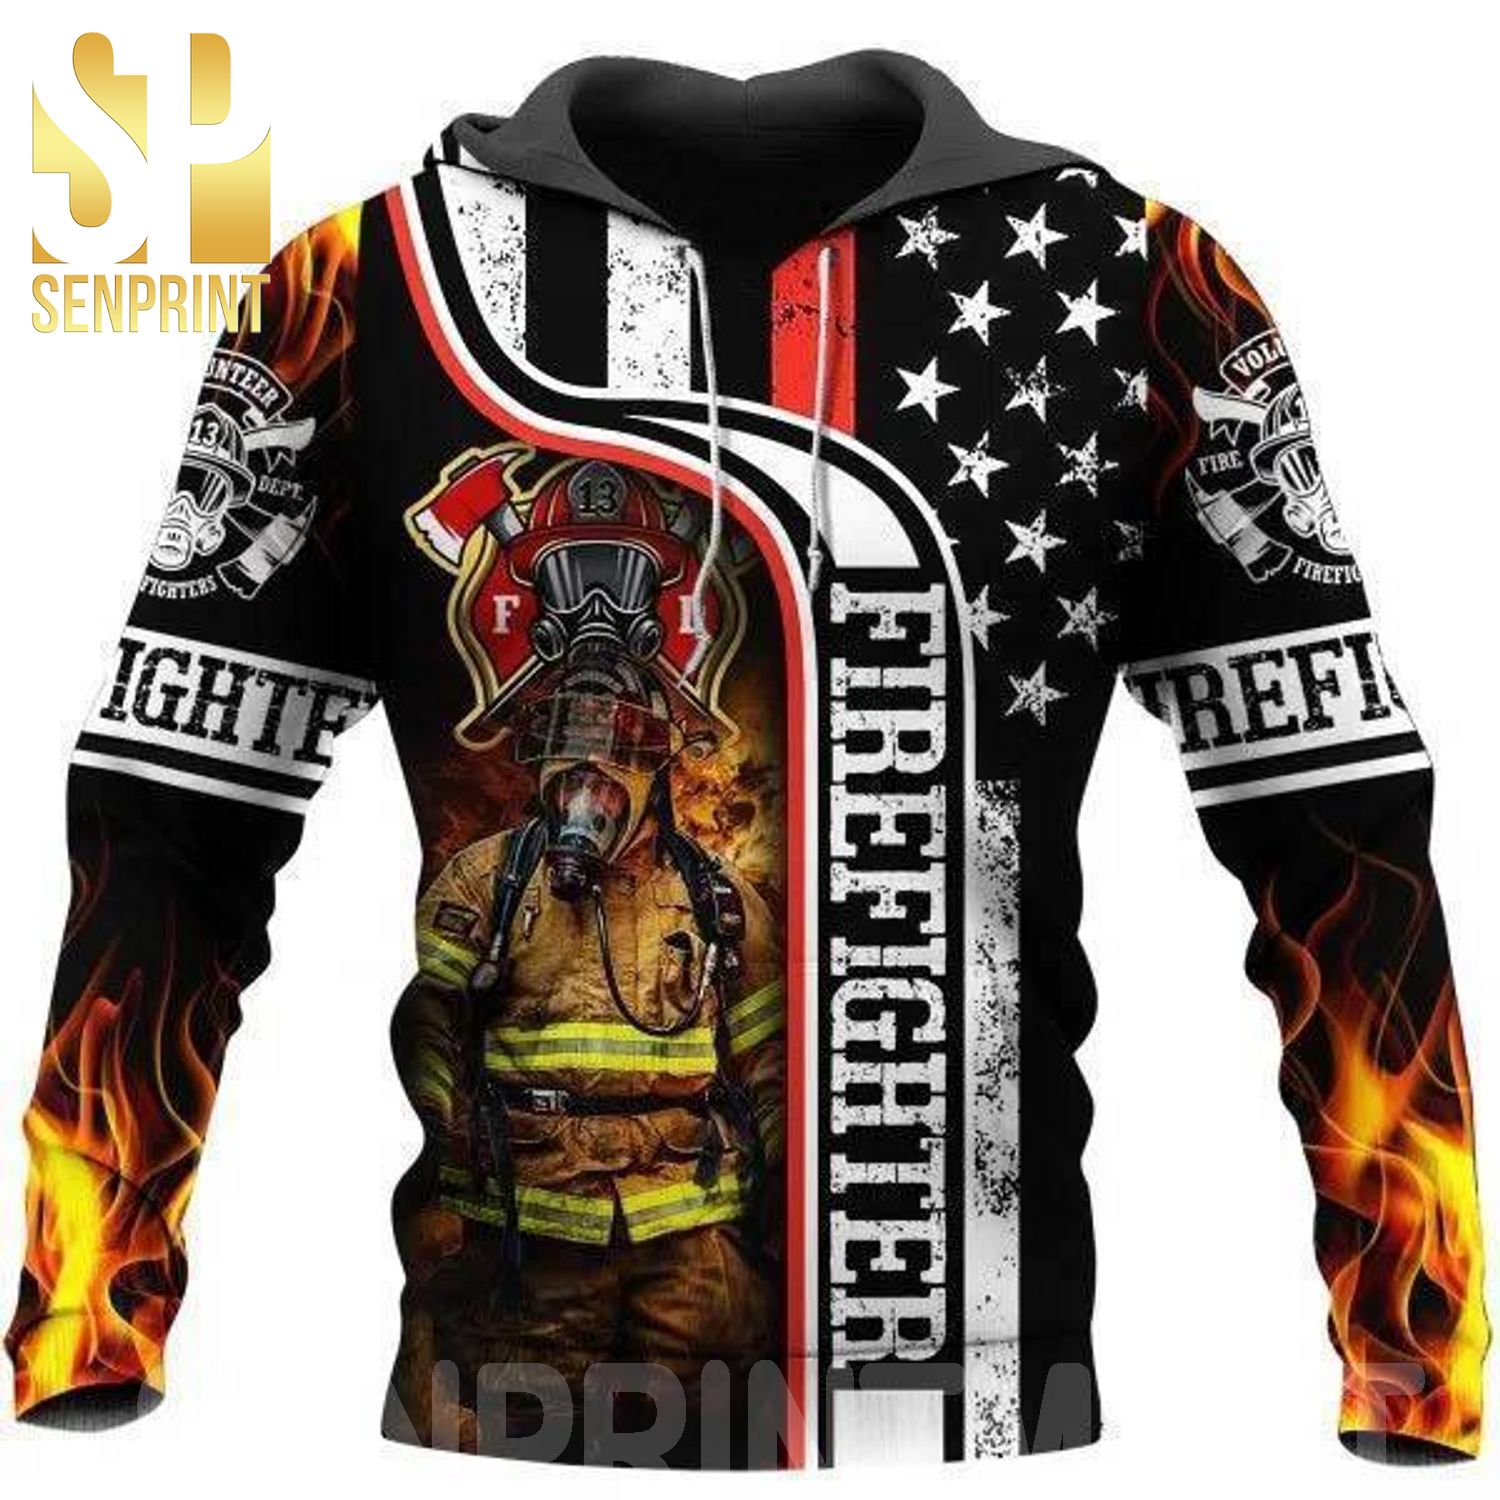 Firefighter 3D All Over Print Shirt